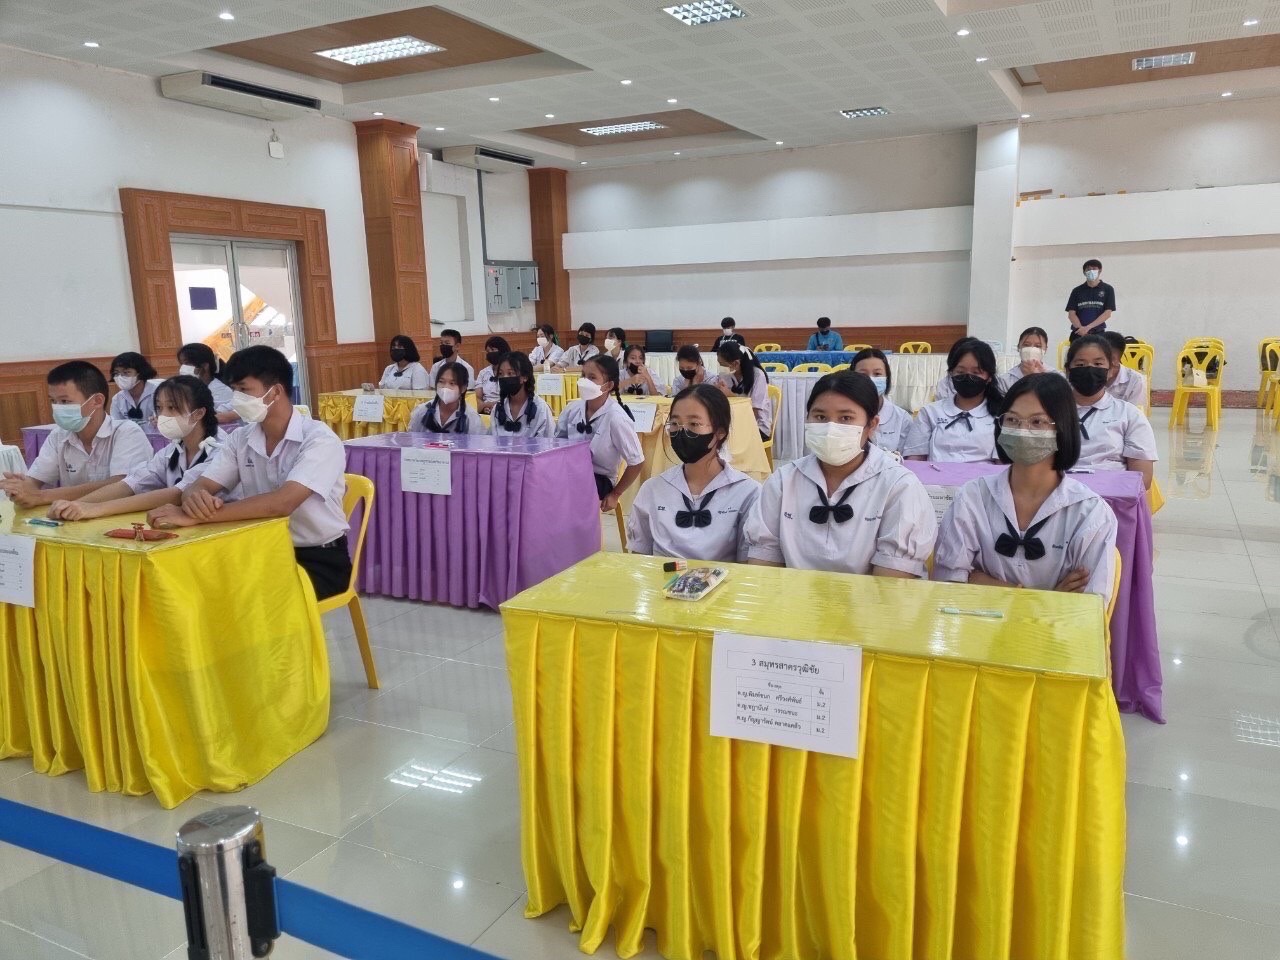 นักเรียนเข้าร่วมการแข่งขันตอบคำถามสารานุกรมไทยสำหรับเยาวชนฯ ครั้งที่ 26